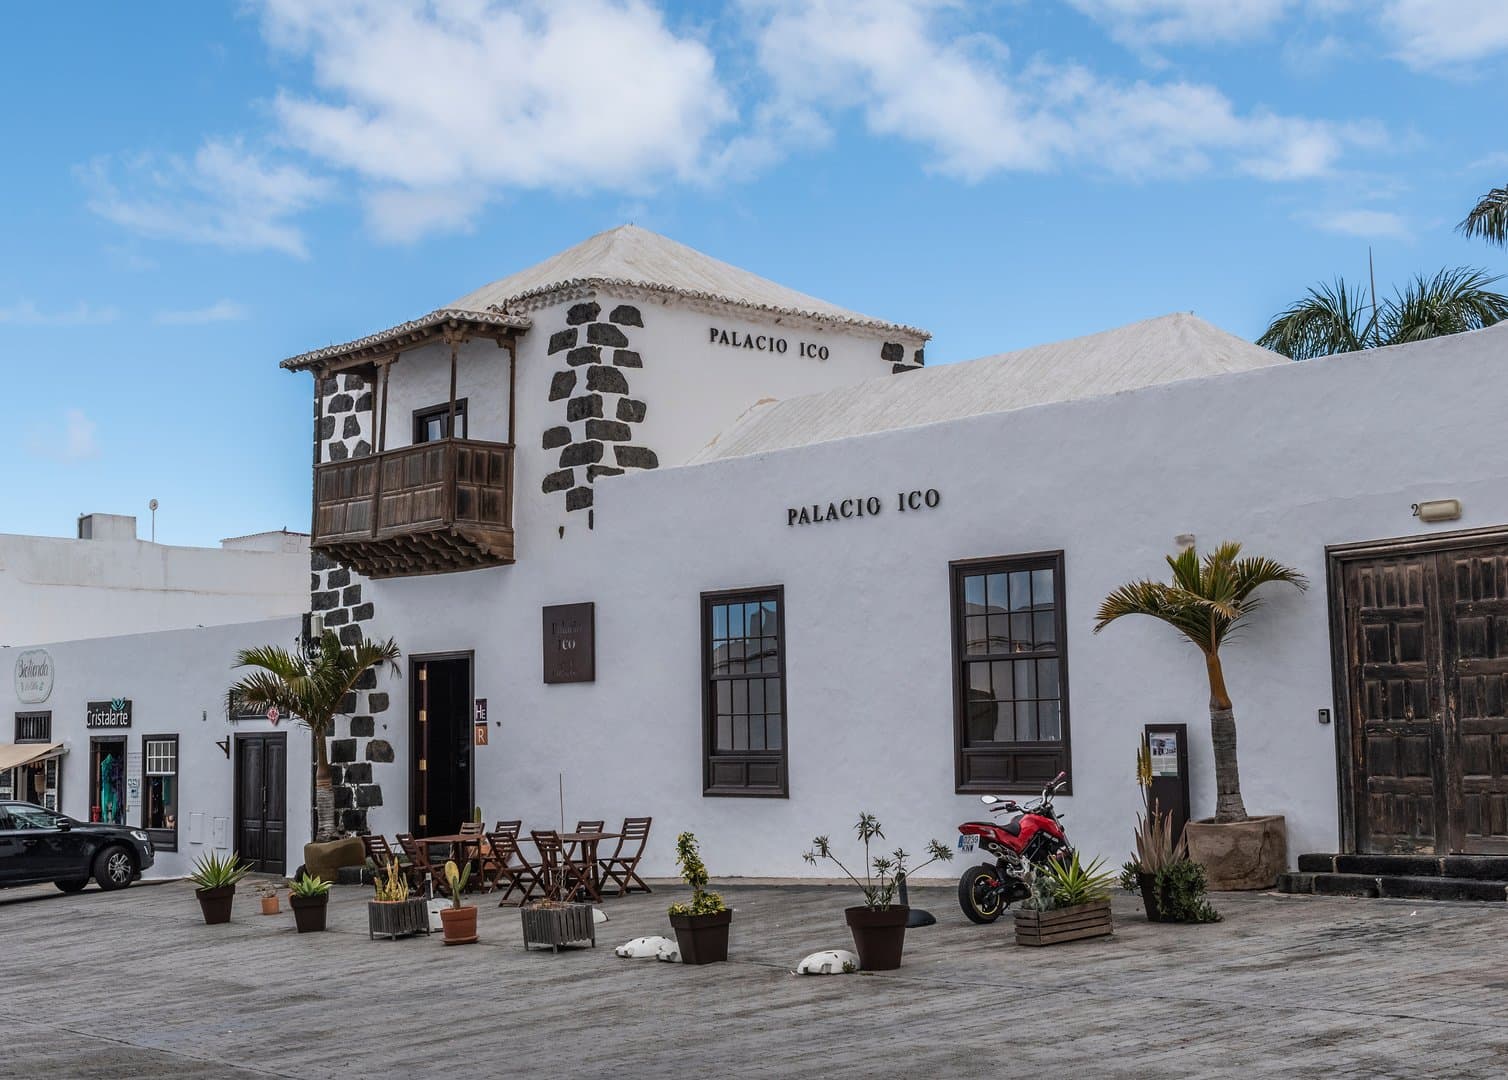 Free Teguise Tour Lanzarote1